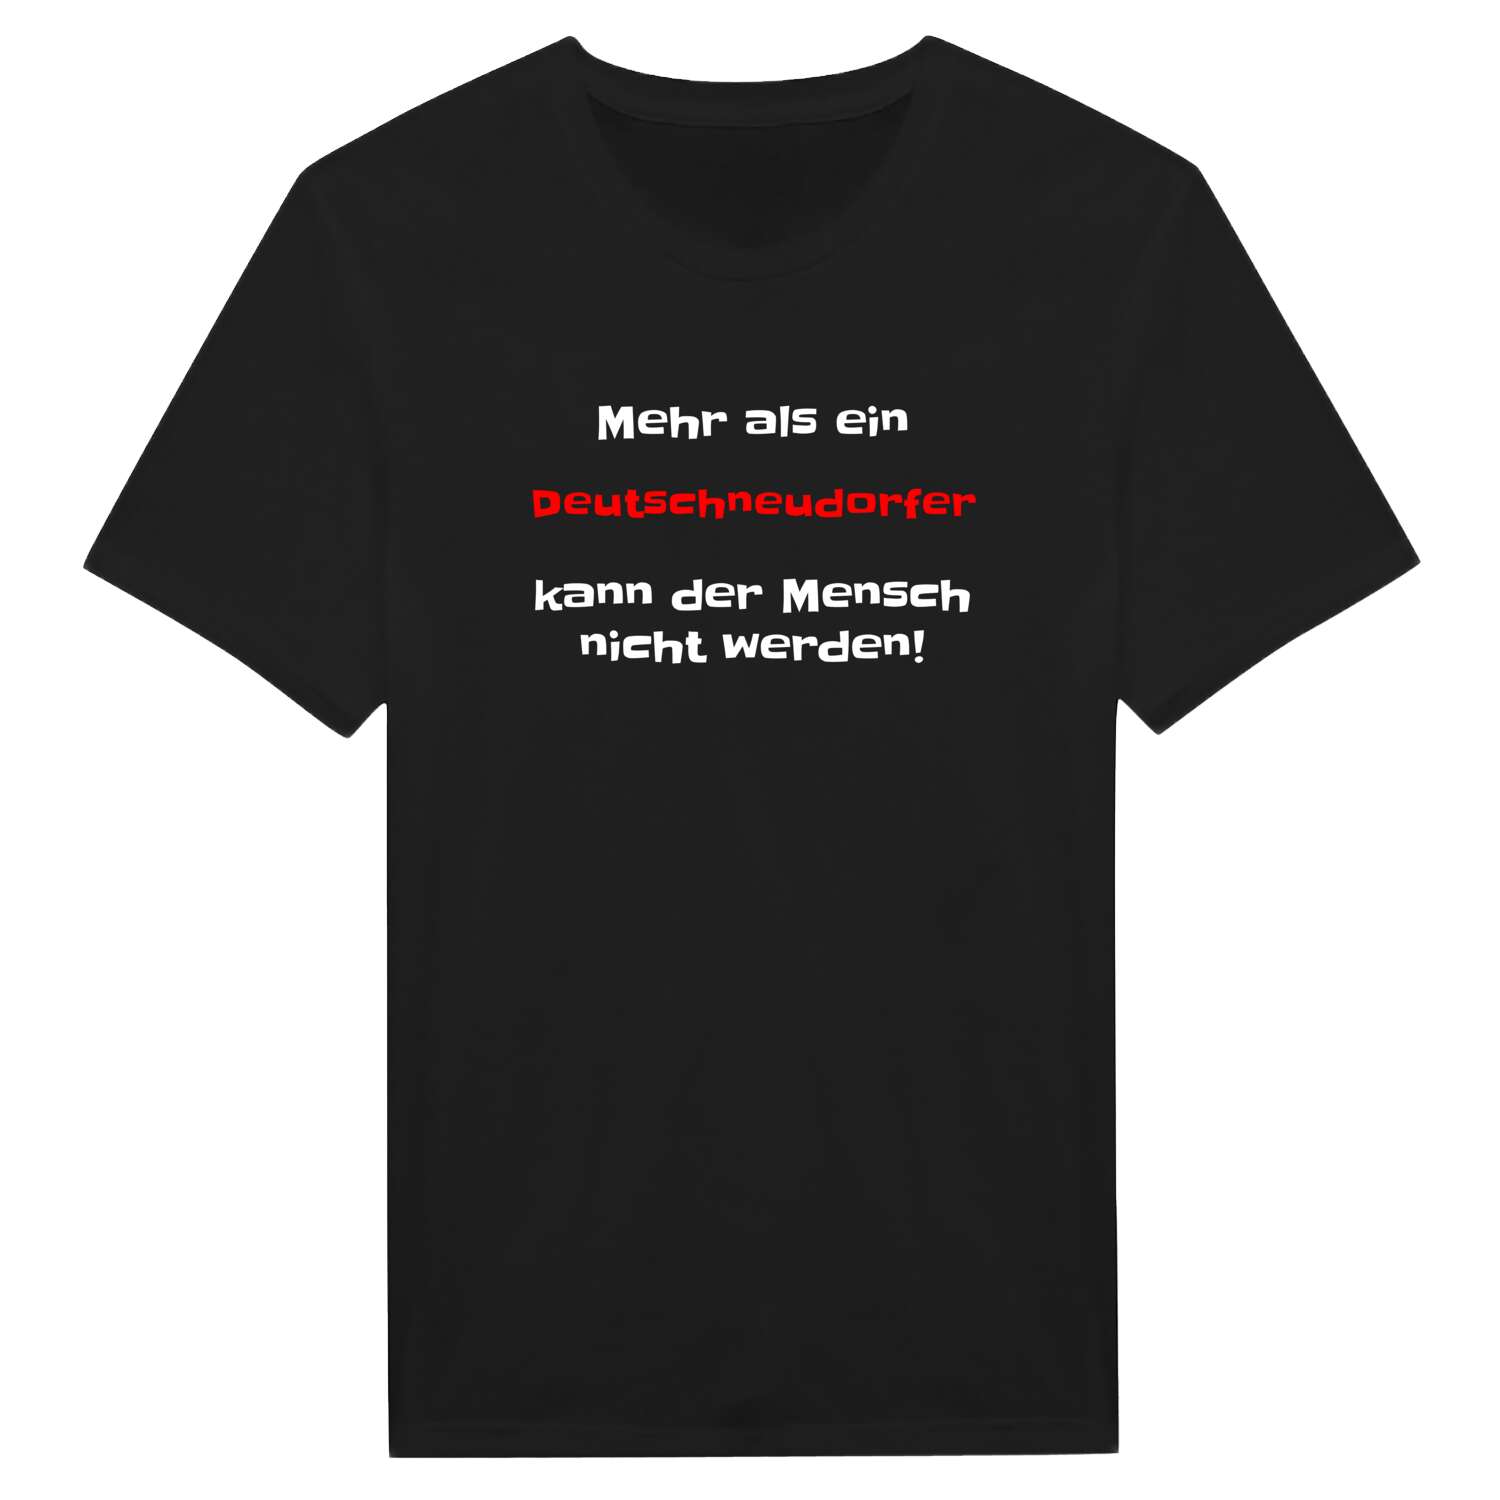 Deutschneudorf T-Shirt »Mehr als ein«